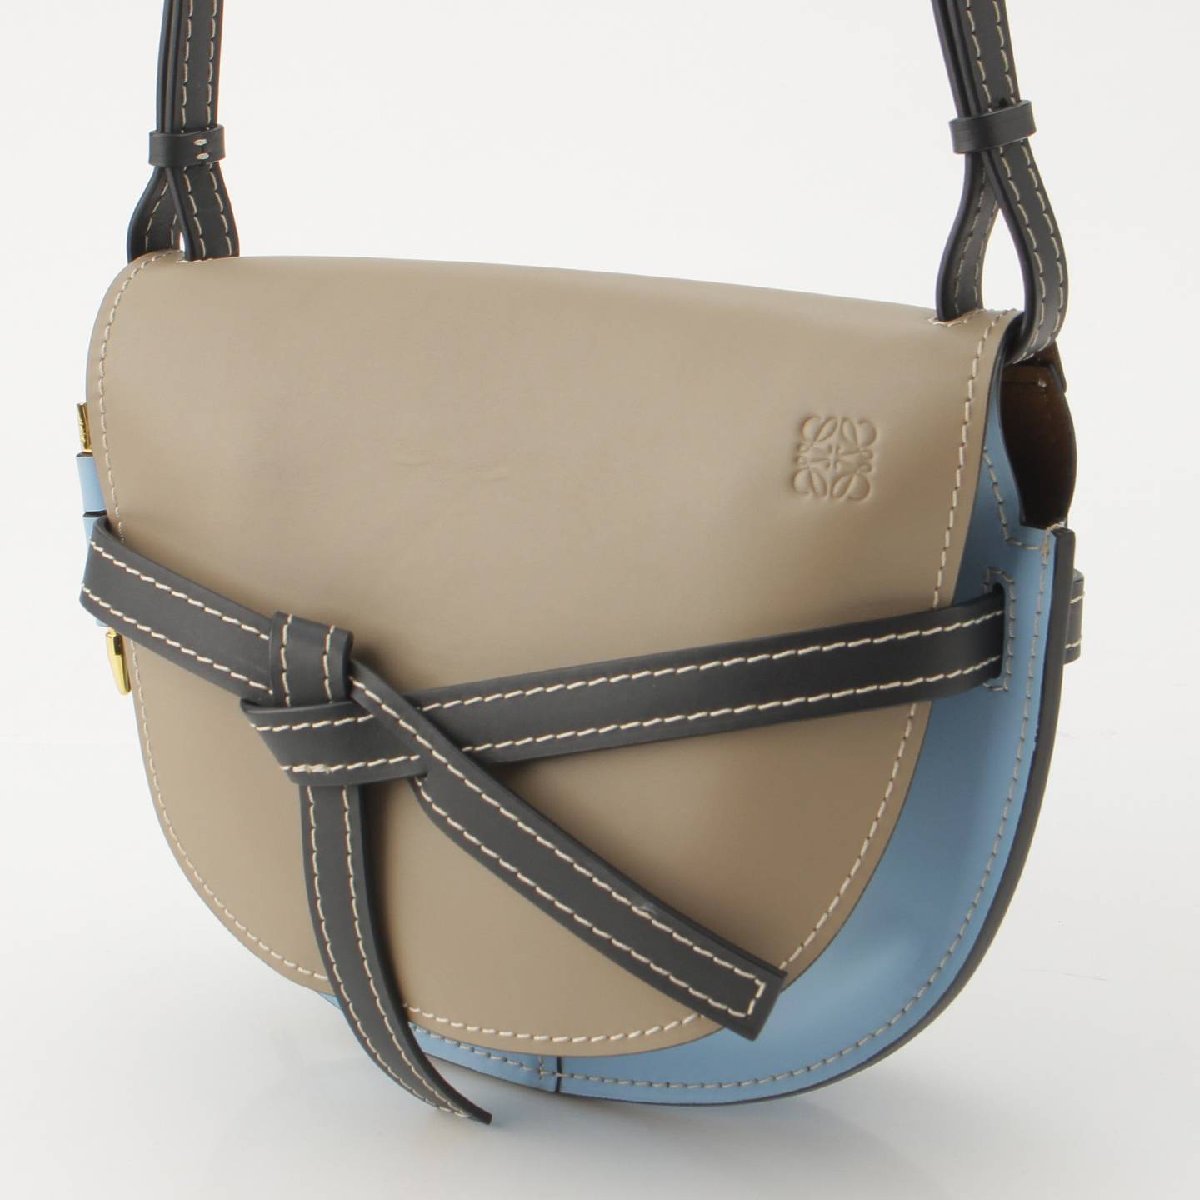 [ Loewe ]Loewe gate small leather shoulder bag 321.54.T20 multicolor [ used ]188179